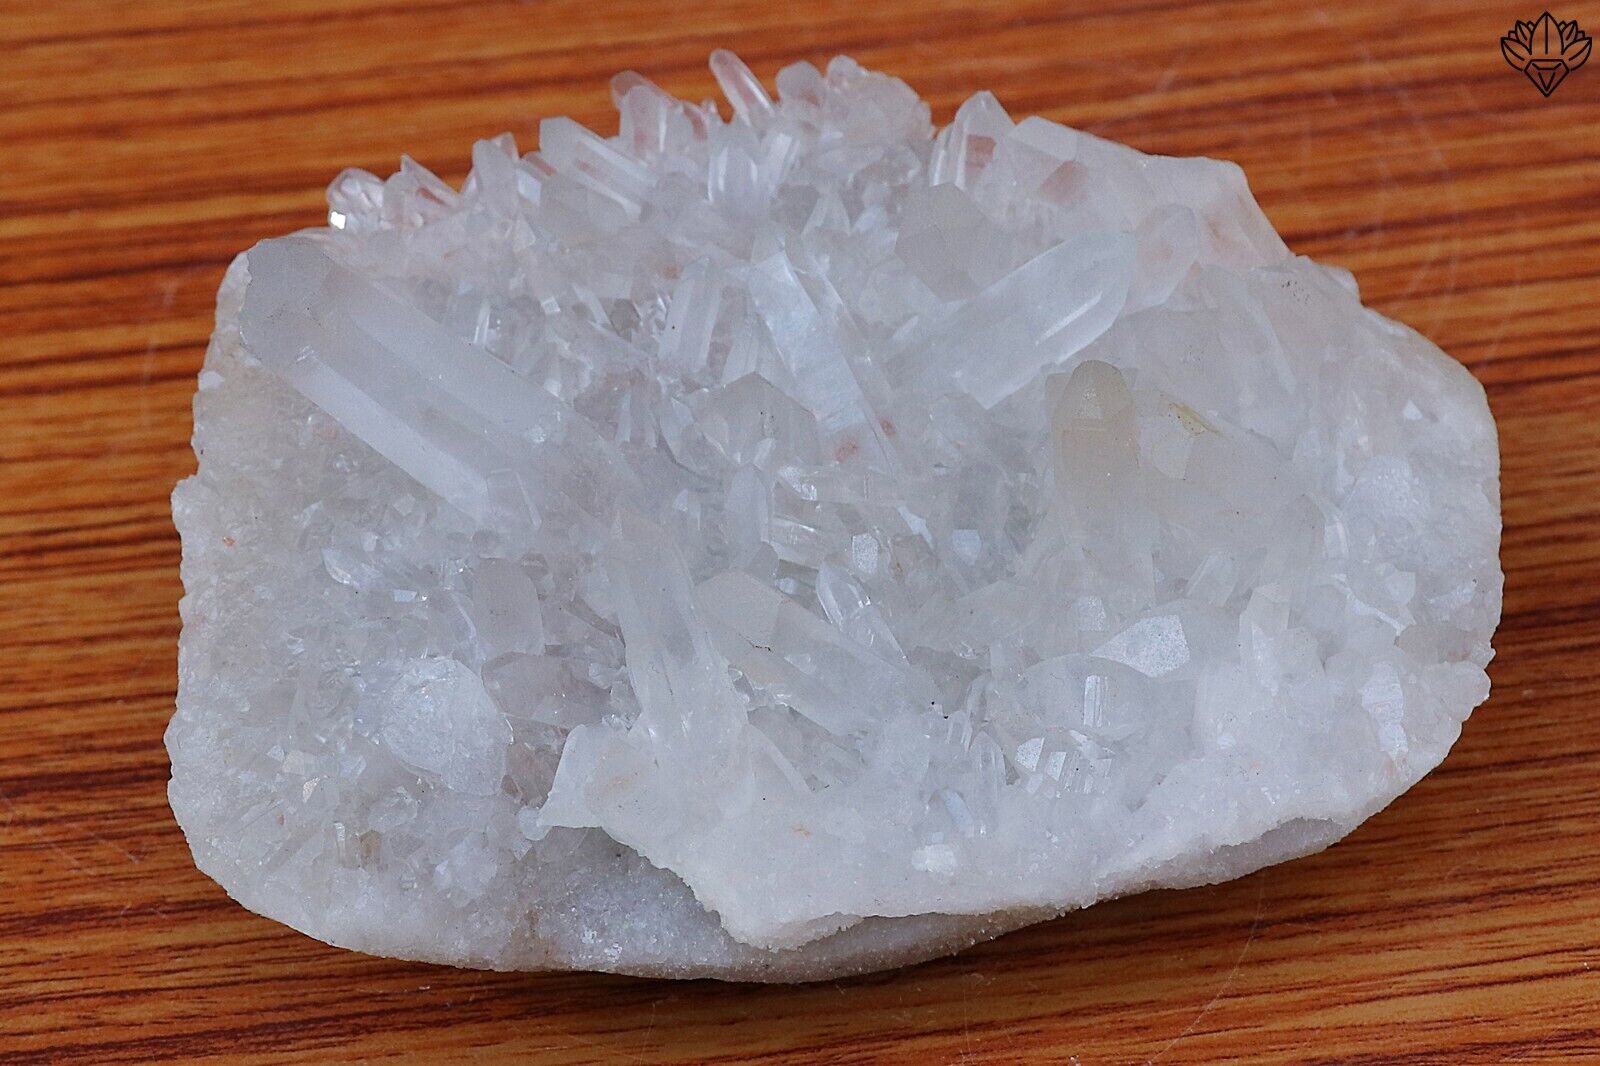 UNIQUE White Quartz 798 gram Himalayan Crystal Rough Cluster Specimen Home Decor